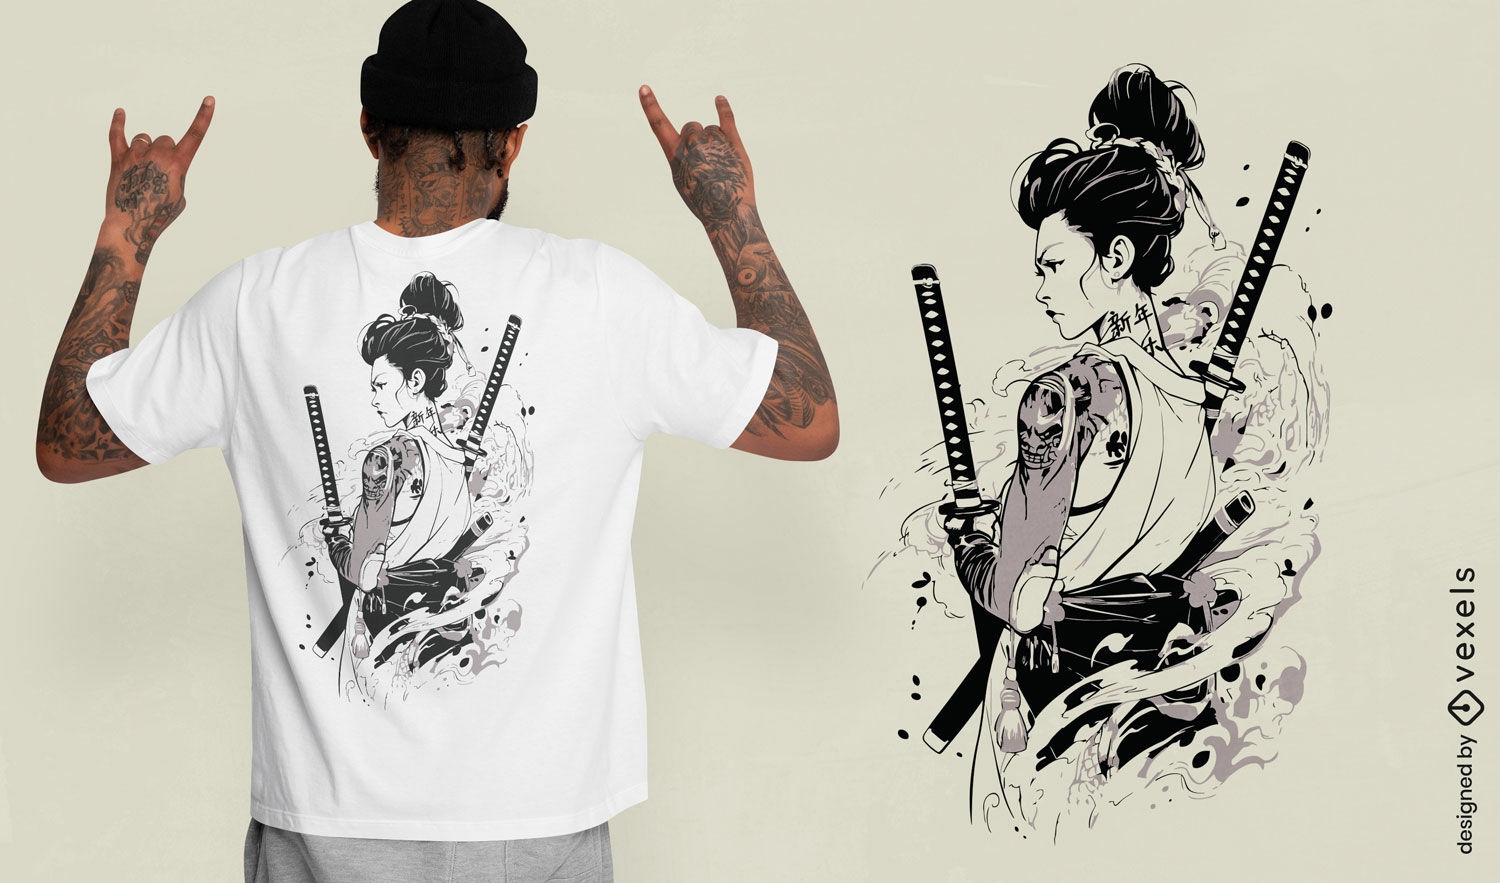 Dise?o de camiseta de arte guerrero samurai.